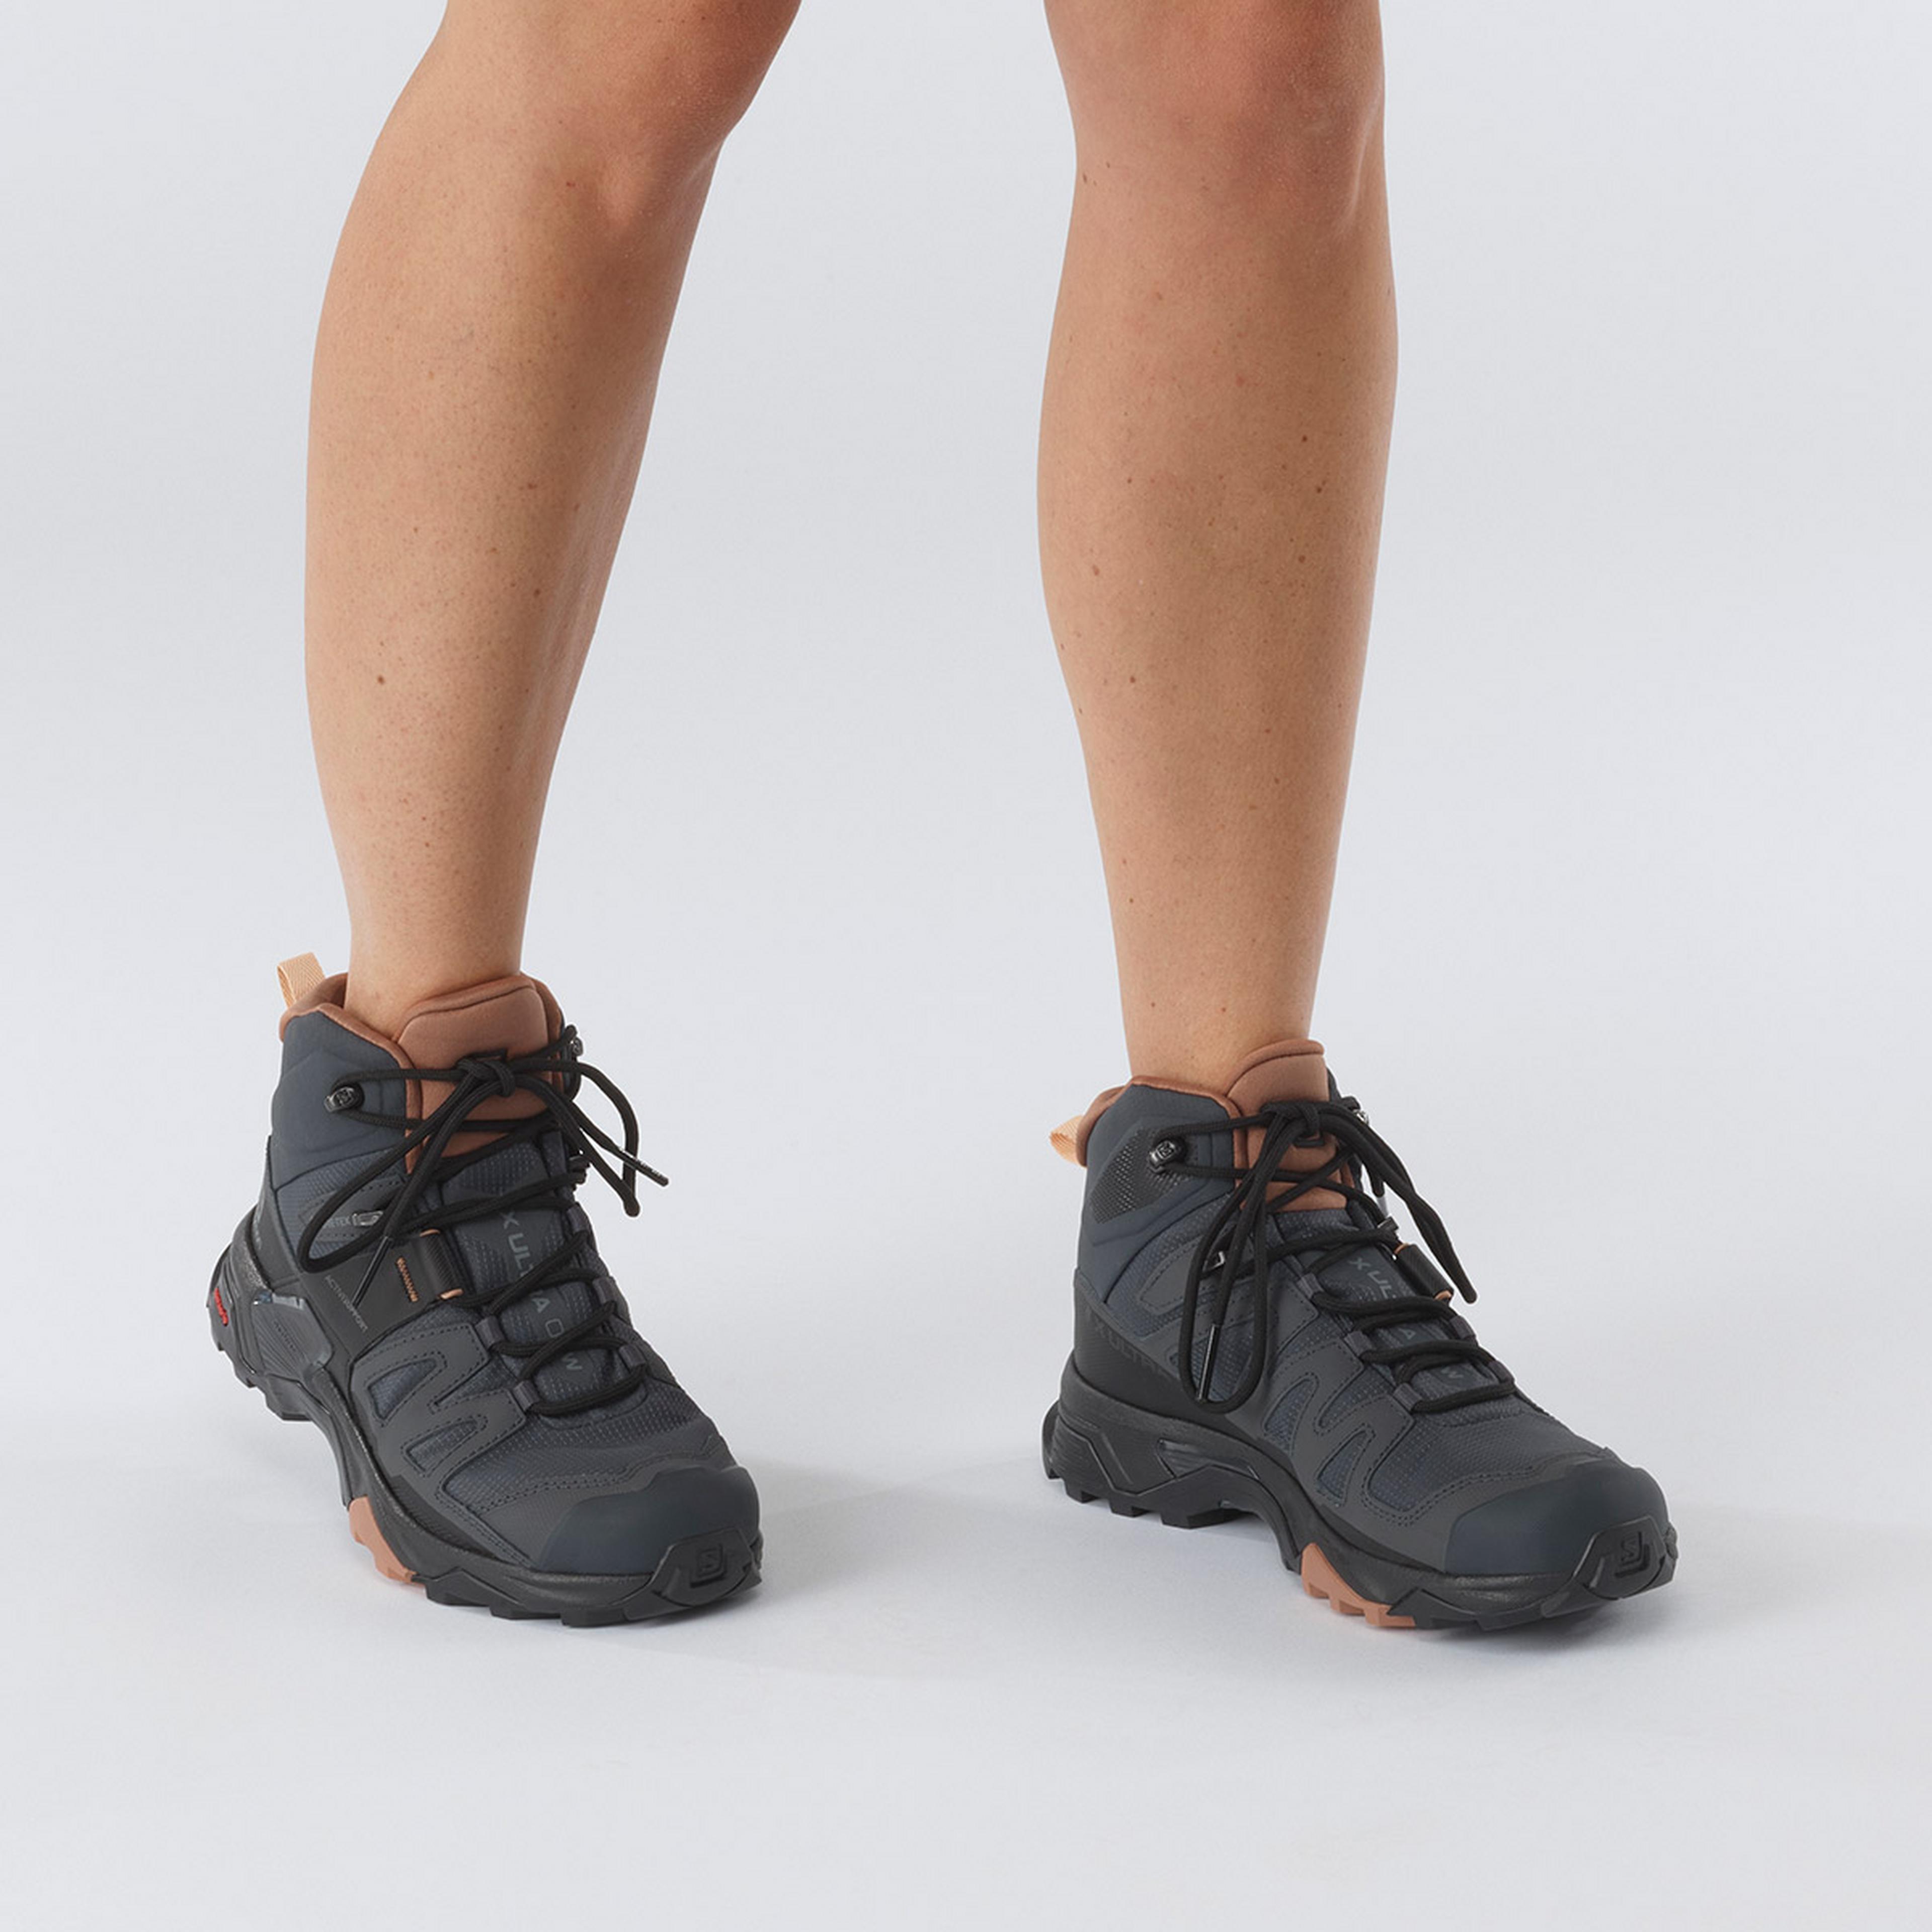 Salomon X Ultra 4 GTX Hiking Shoe - Women's - Women